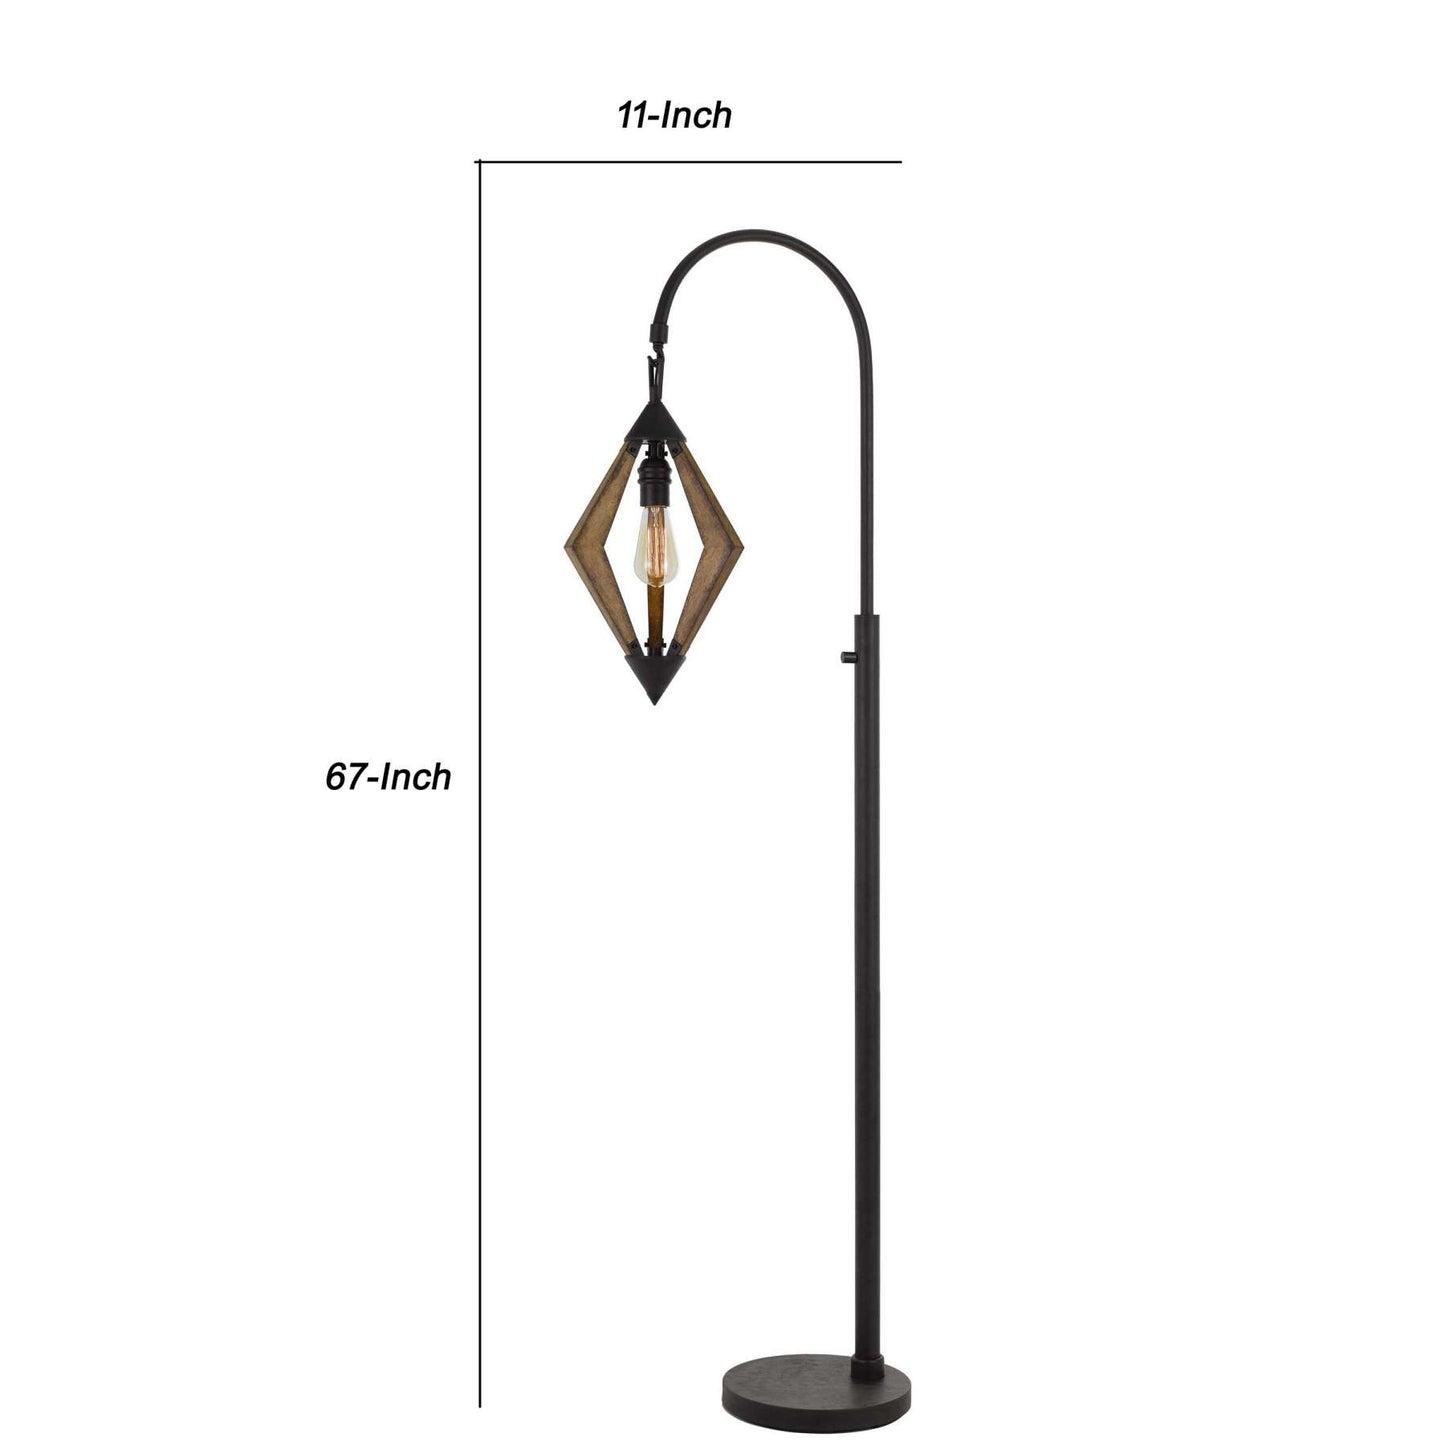 Tubular Metal Downbridge Floor Lamp With Wooden Accents, Black By Benzara | Floor Lamps |  Modishstore  - 2